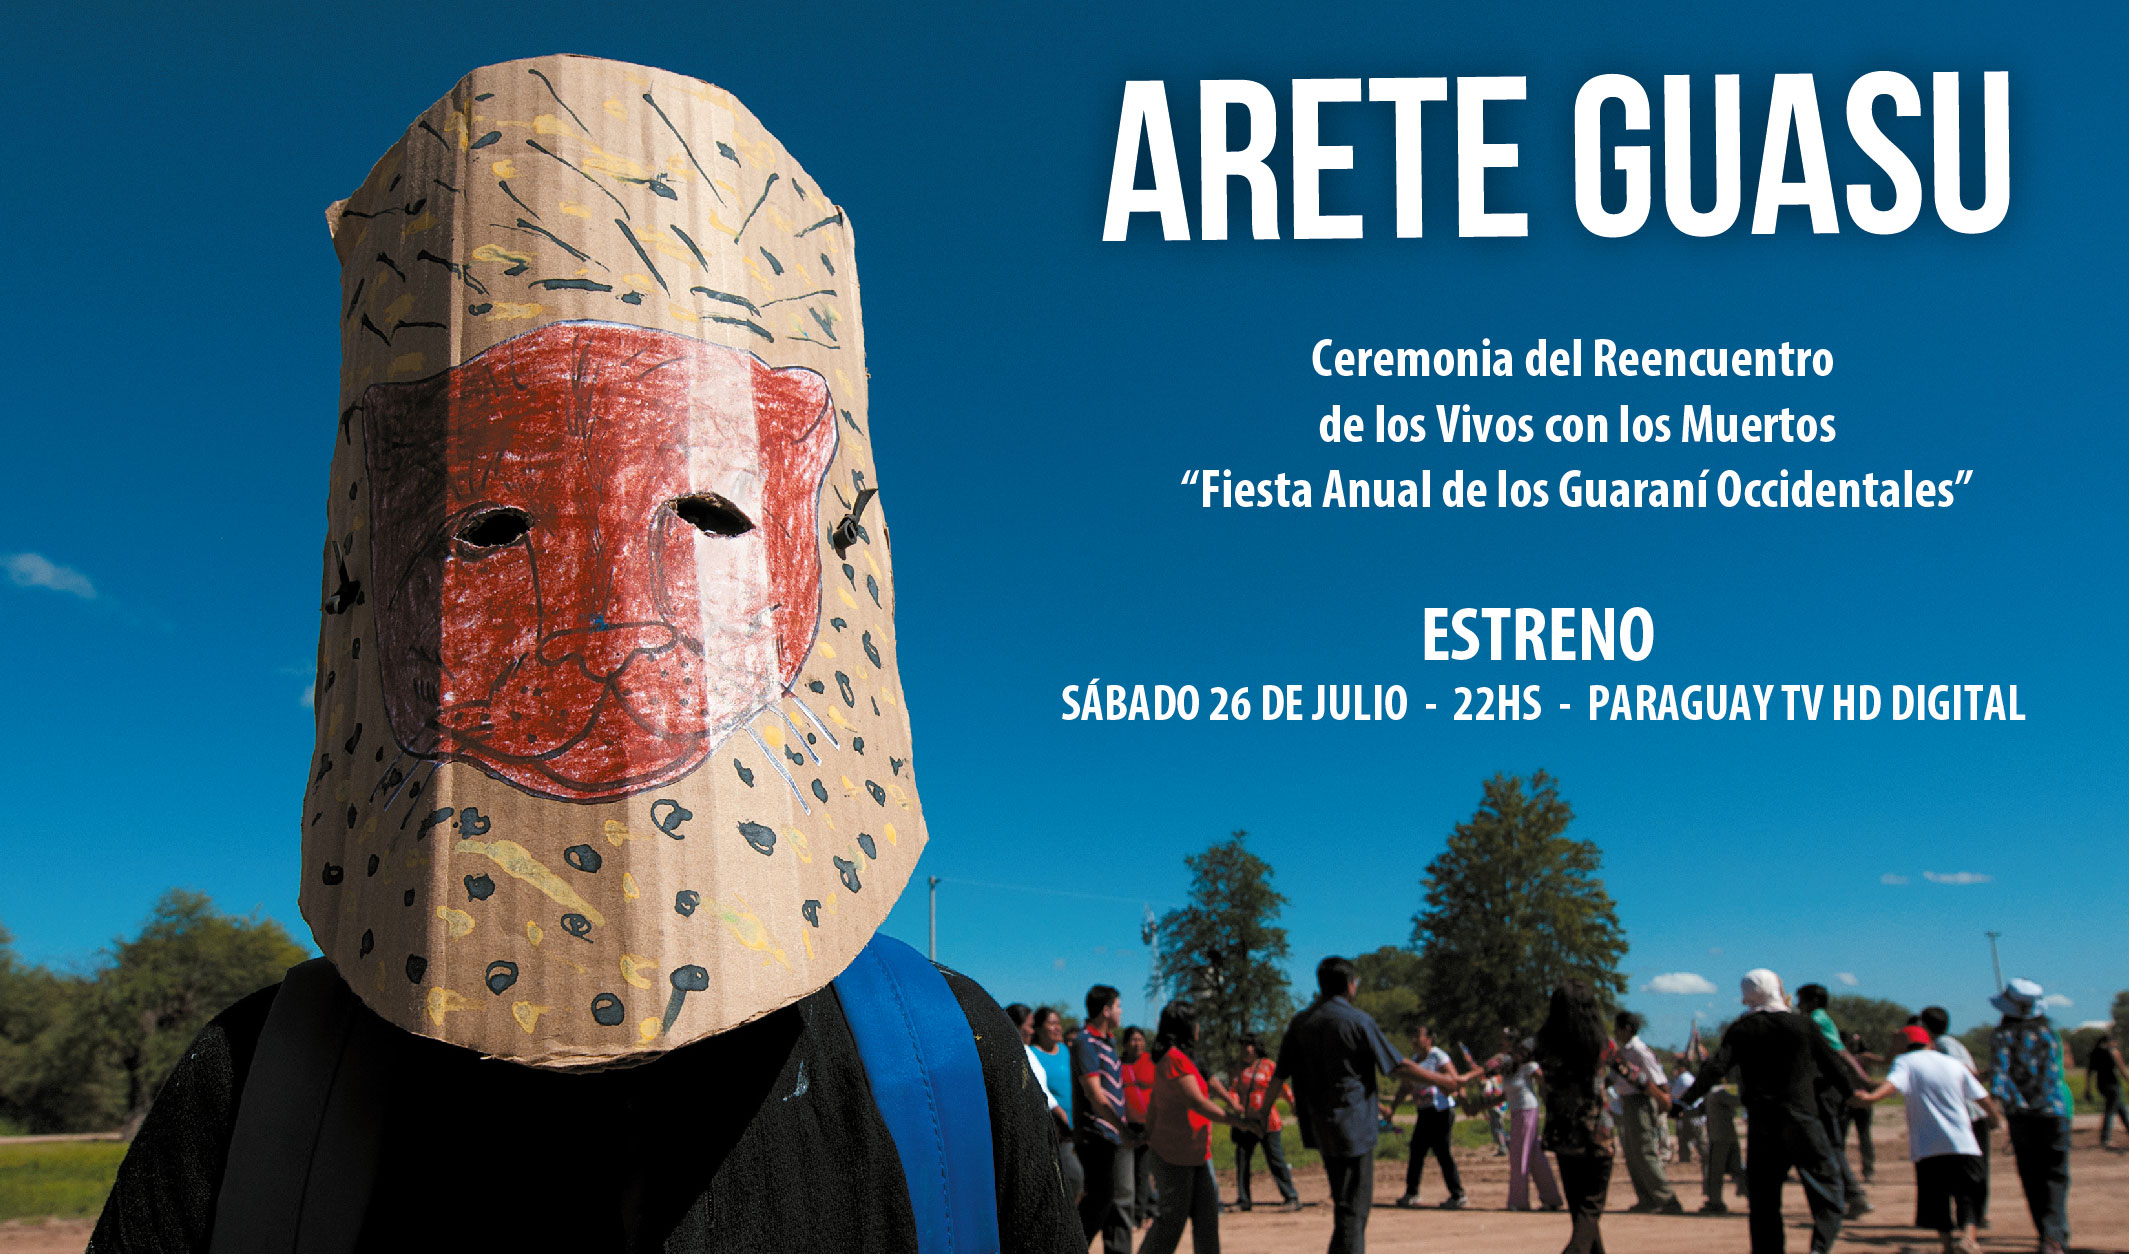 Estreno del documental Arete Guasu, esta noche por Paraguay TV imagen